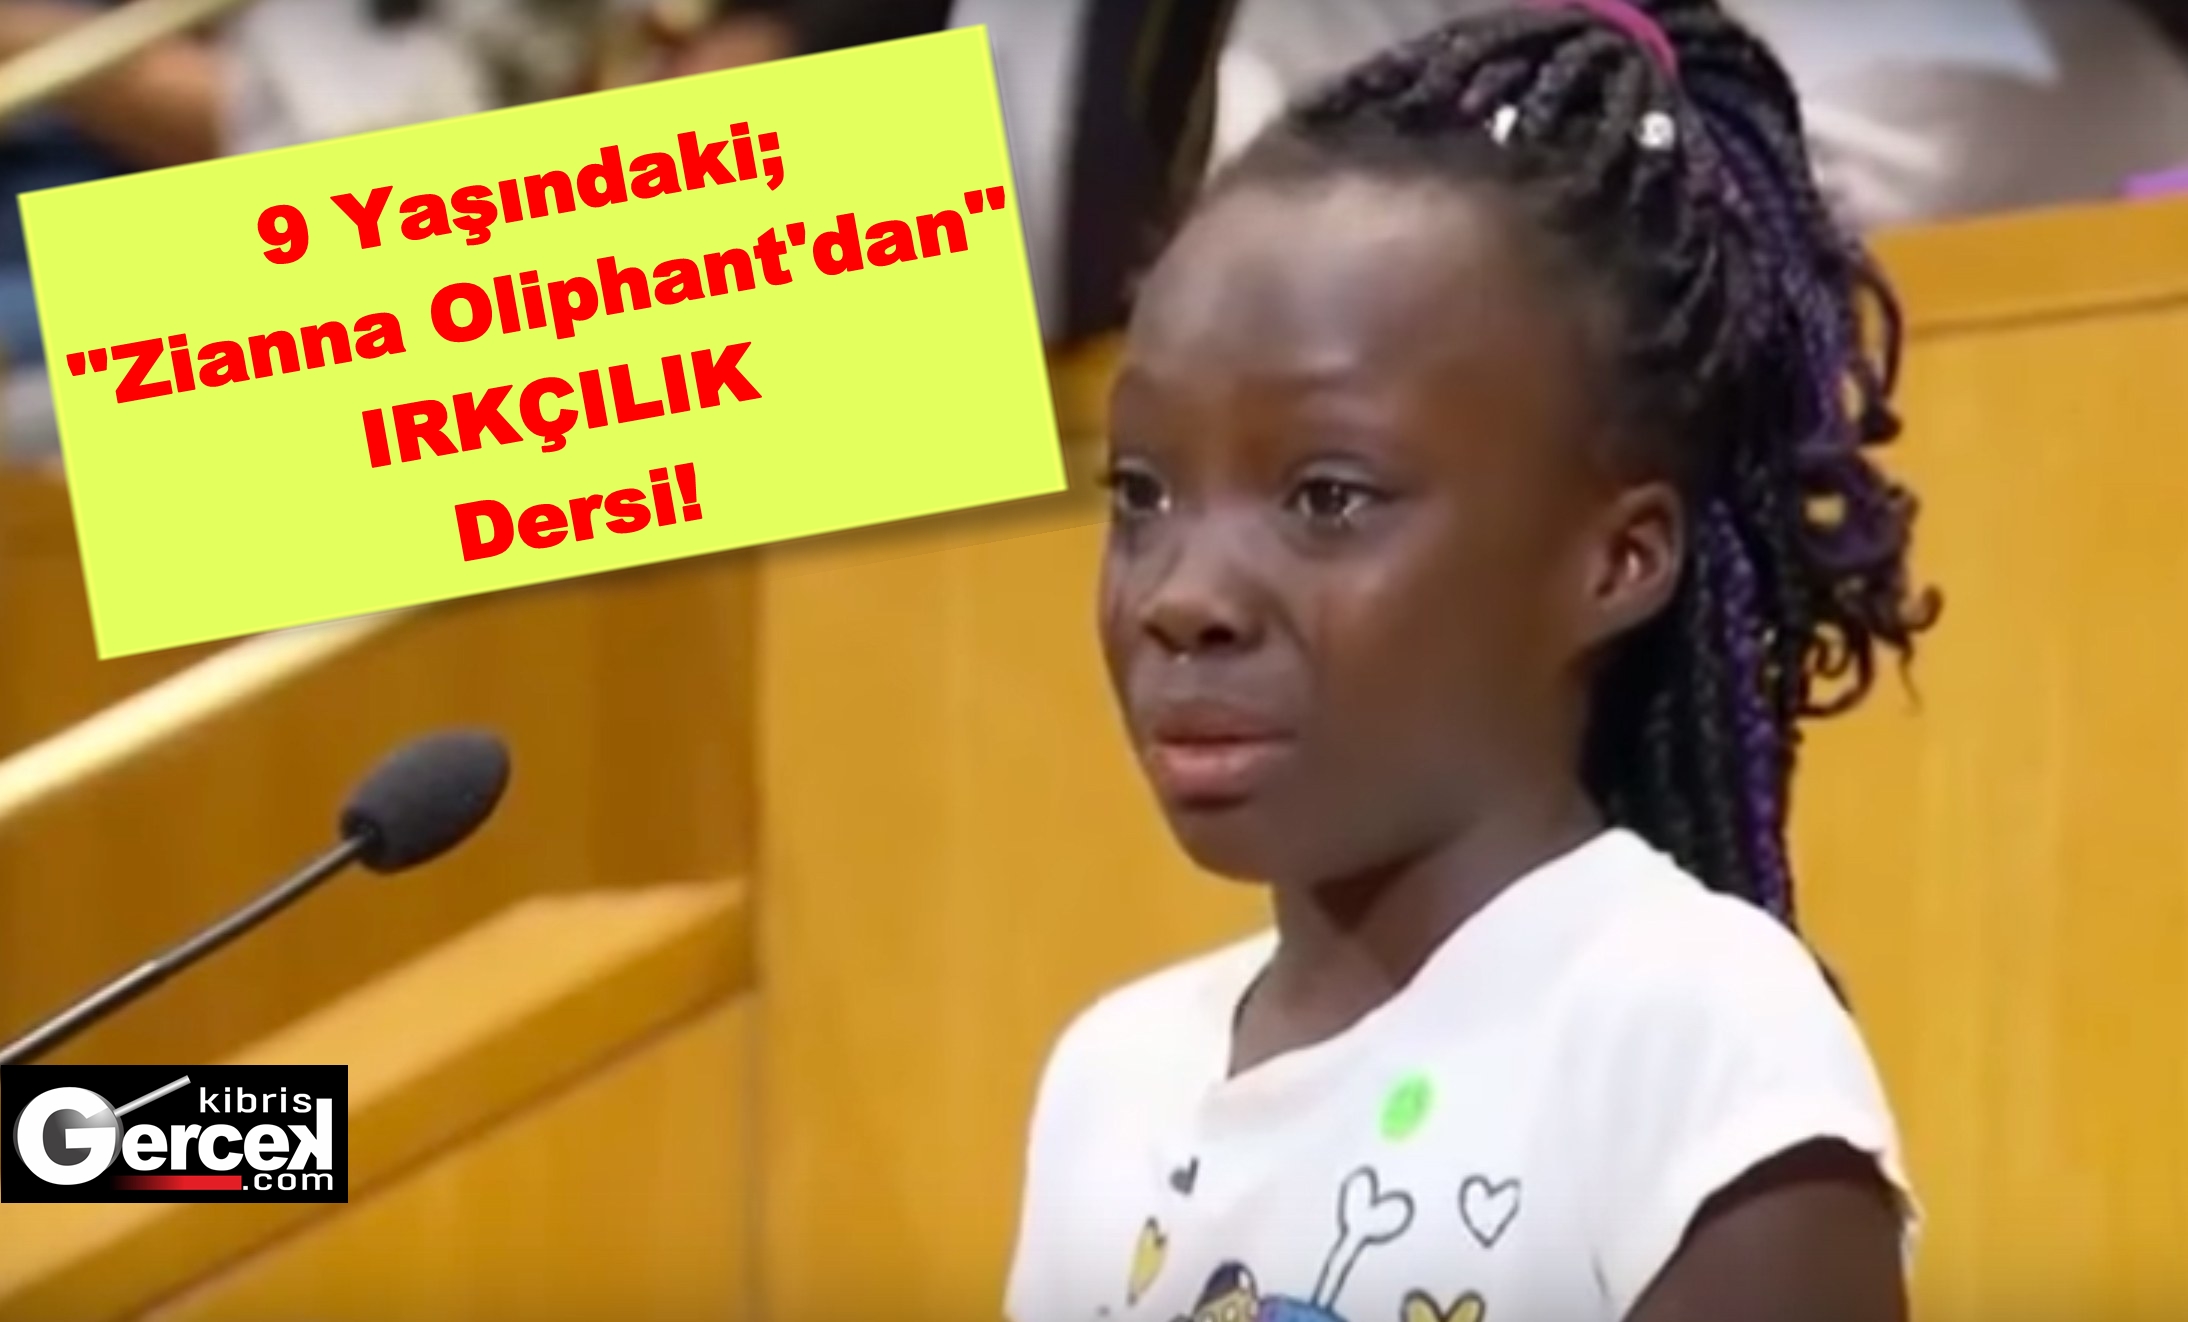 9 Yaşında ki Kız Çocuğu; ”Zianna Oliphant’dan” IRKÇILIK Dersi!